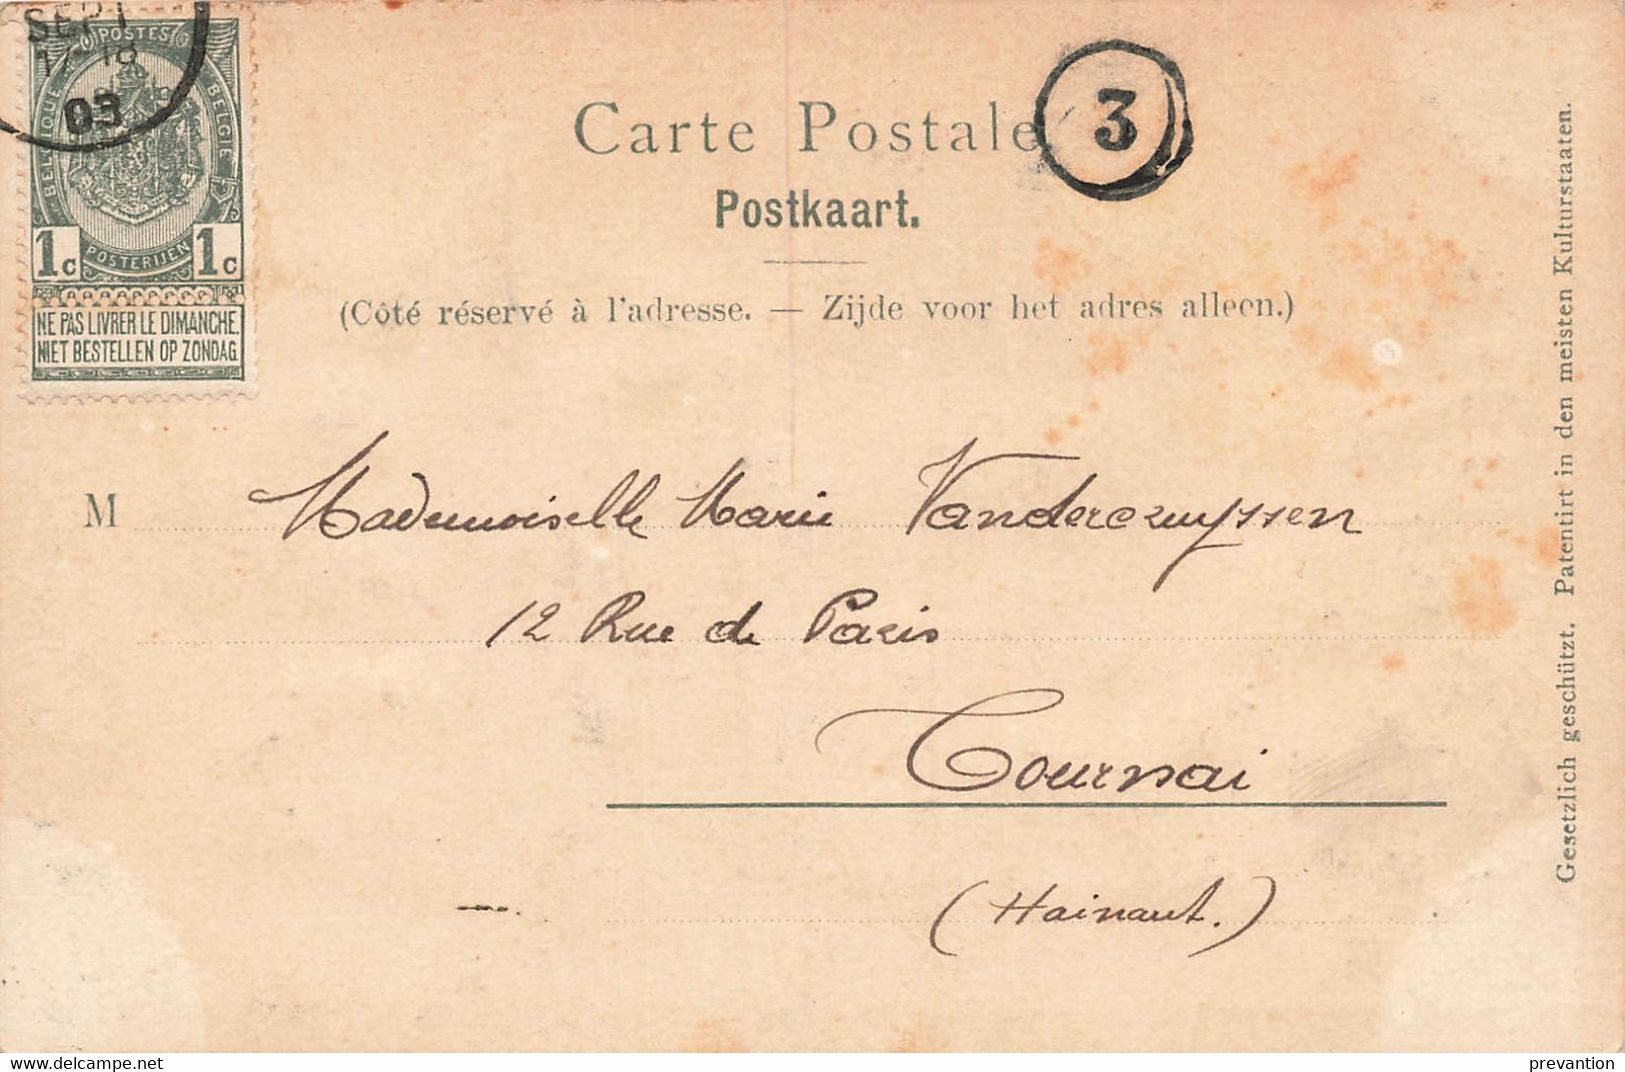 BRUXELLES - Porte De Hal (Carte Gauffréesur Arbre Et Tour) - Carte Circulé En 1903 - Zonder Classificatie